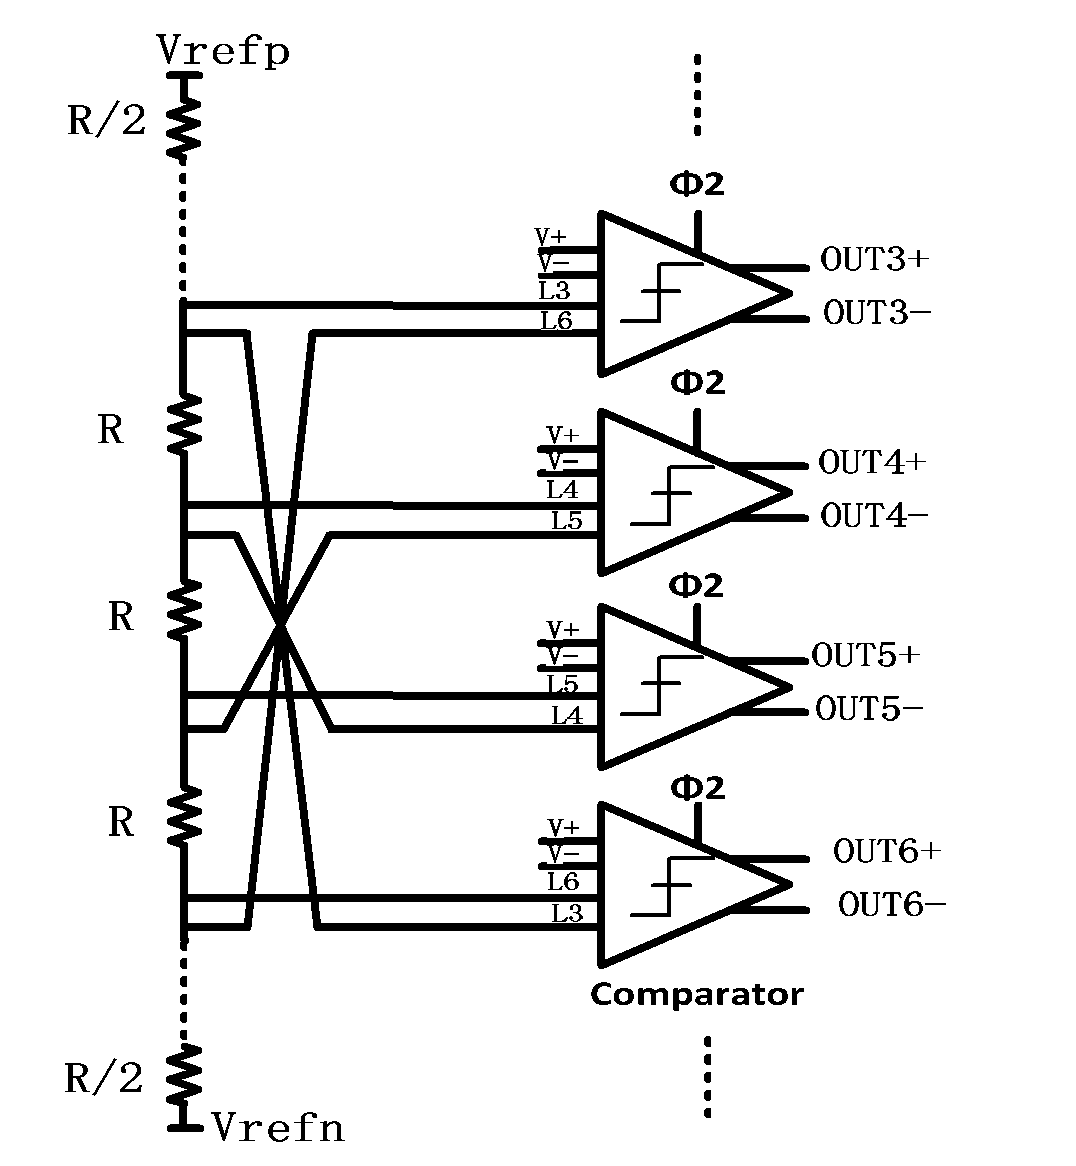 Capacitive-voltage-division-type multi-bit quantizer